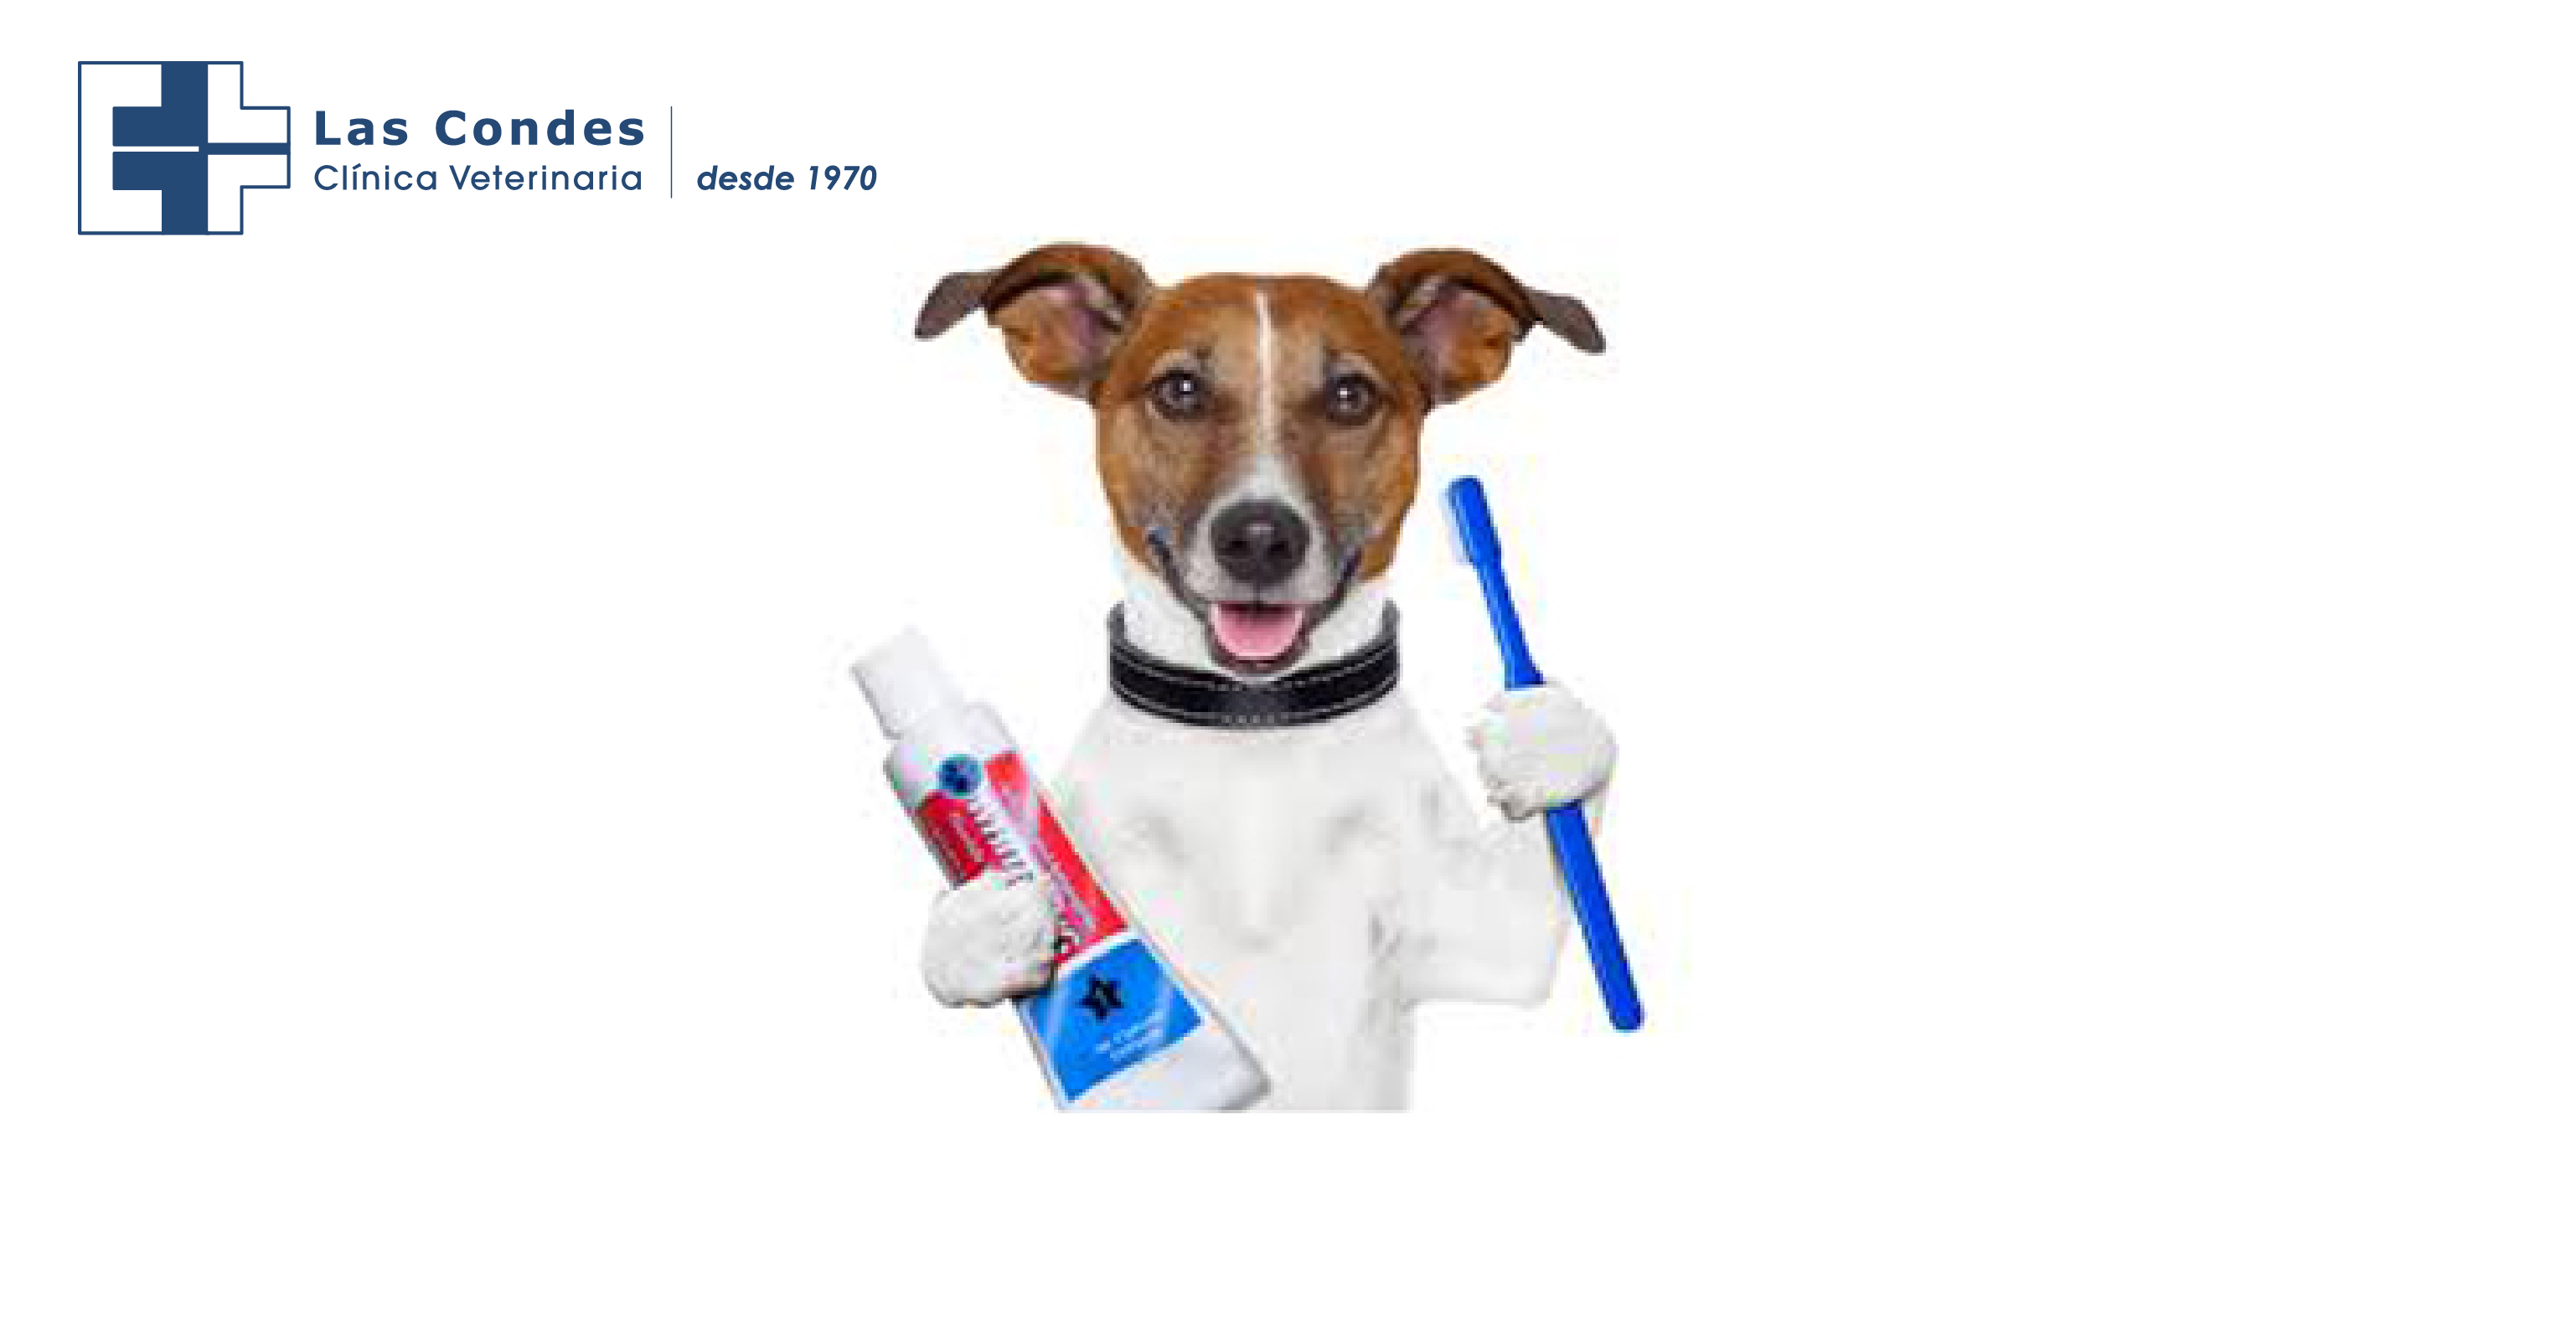 Limpieza dental de nuestras mascotas ¿es tan importante?